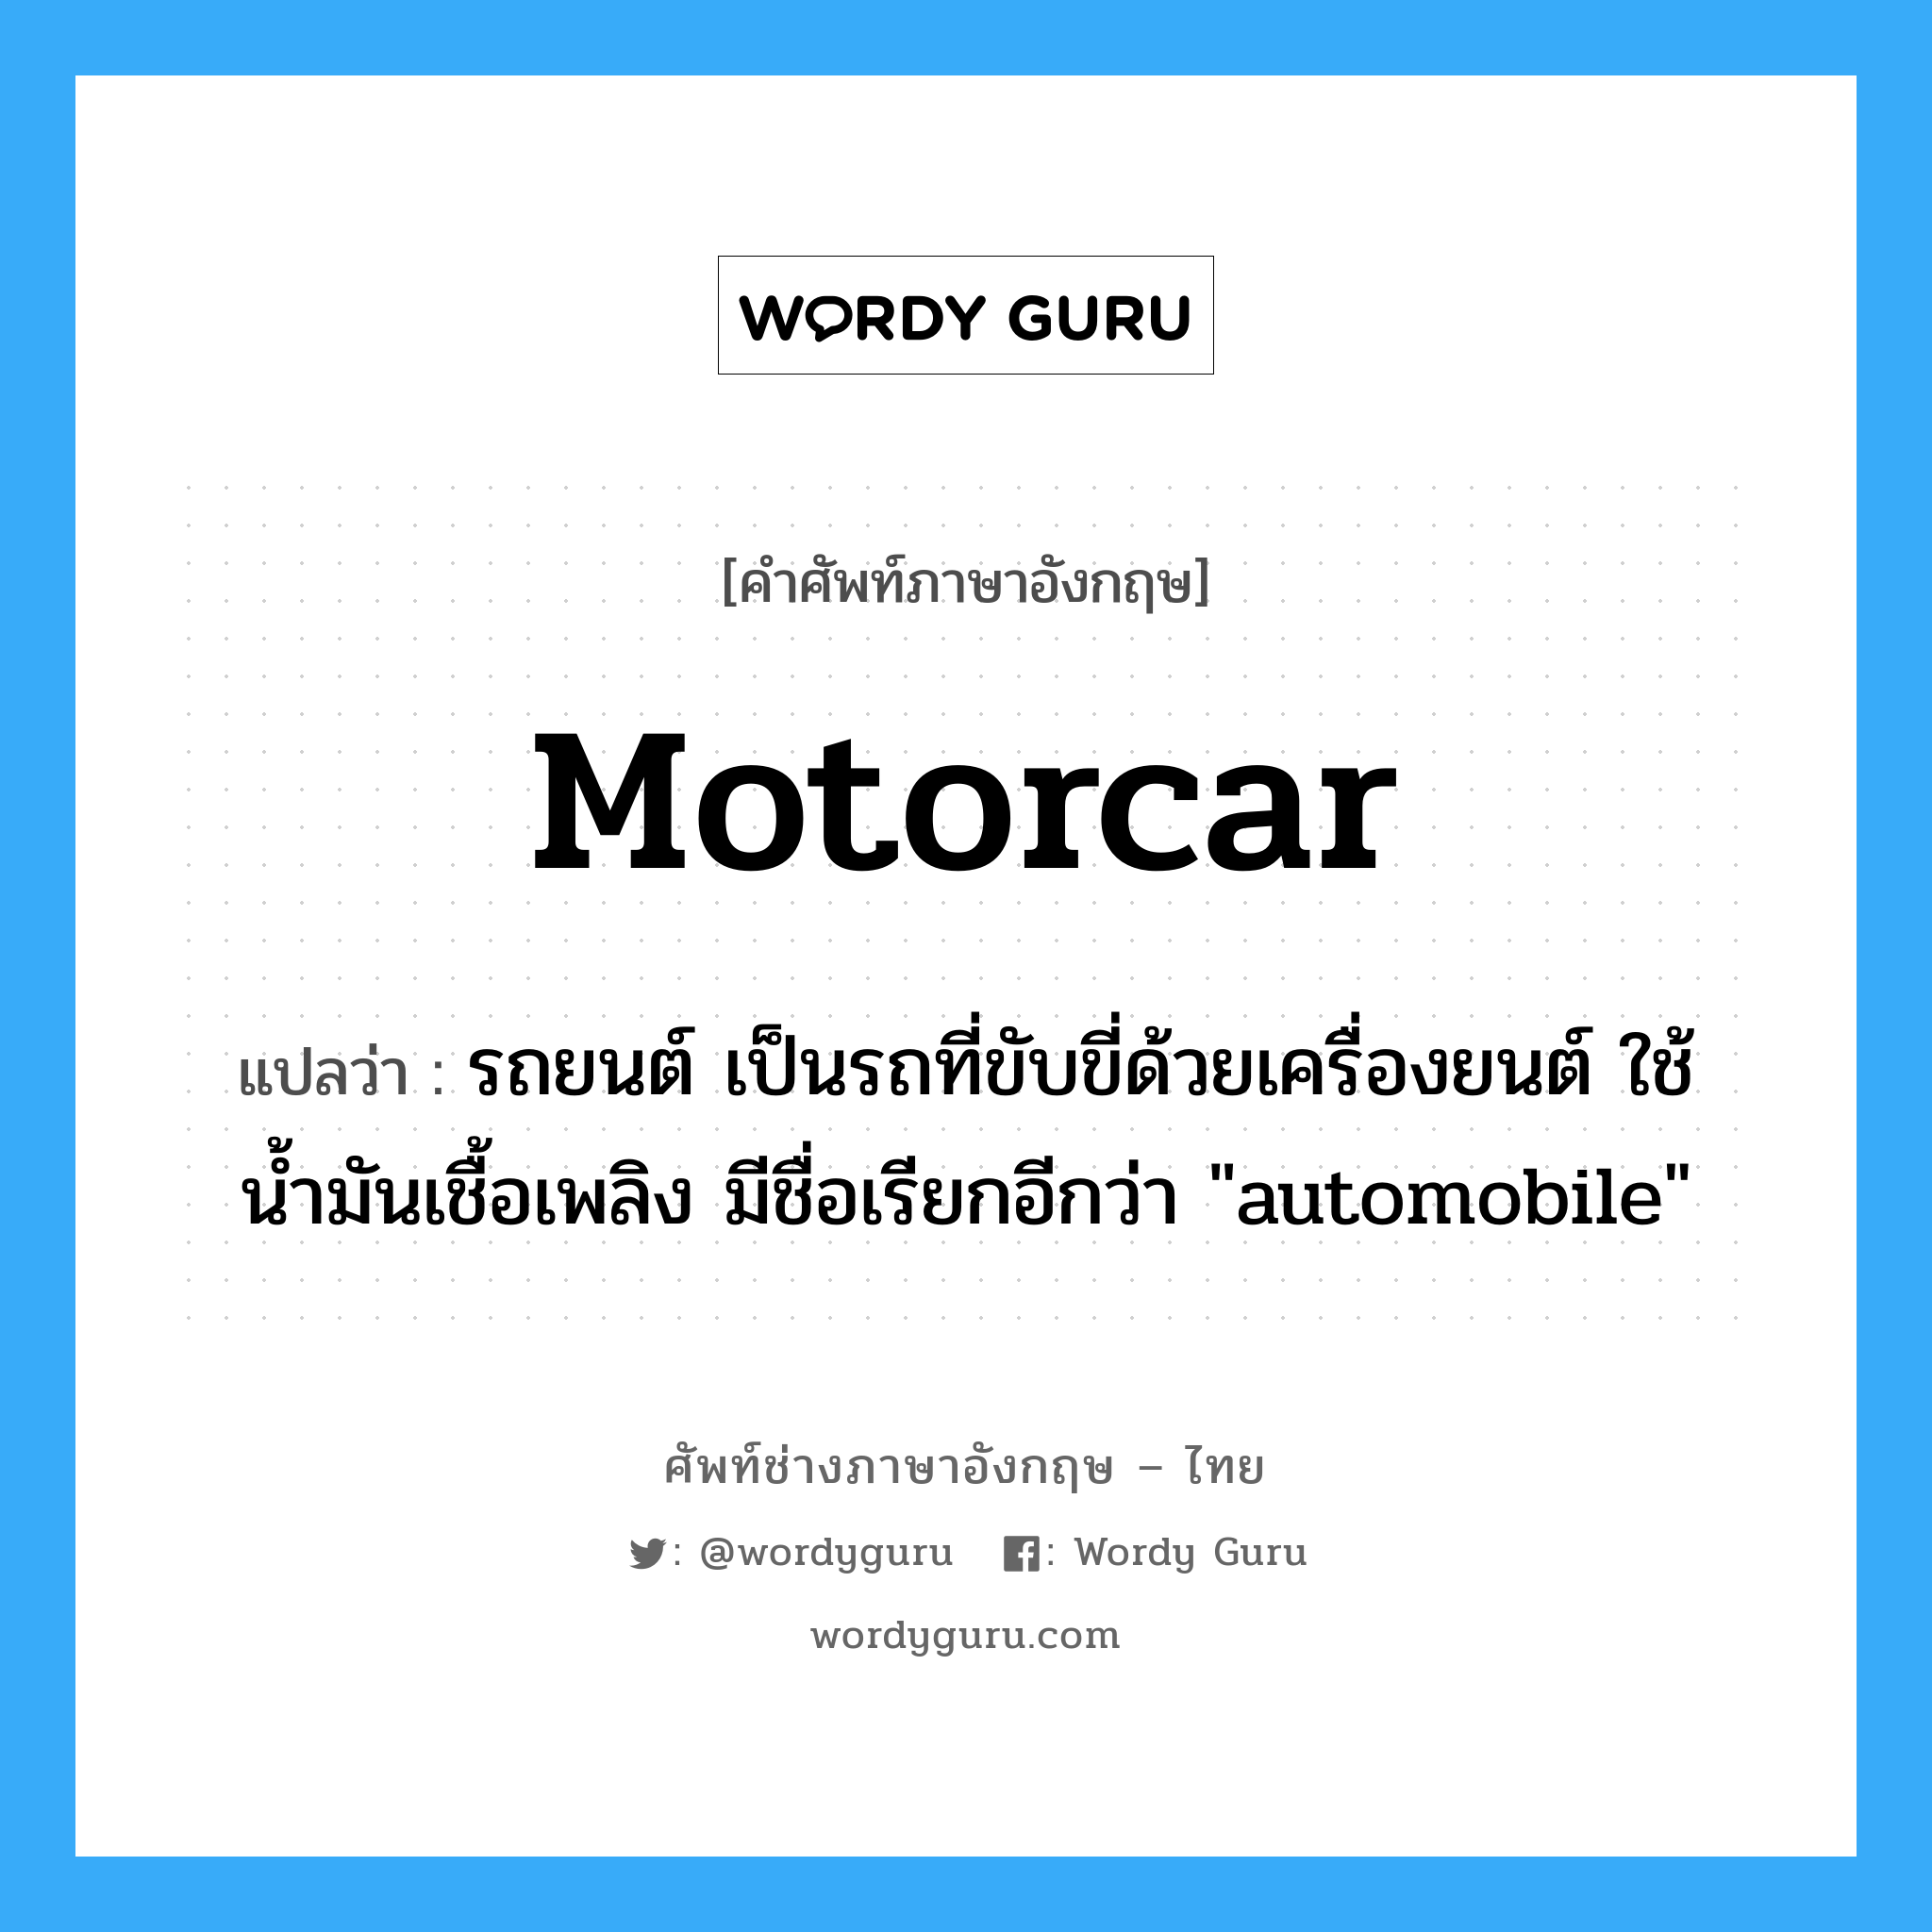 motorcar แปลว่า?, คำศัพท์ช่างภาษาอังกฤษ - ไทย motorcar คำศัพท์ภาษาอังกฤษ motorcar แปลว่า รถยนต์ เป็นรถที่ขับขี่ด้วยเครื่องยนต์ ใช้น้ำมันเชื้อเพลิง มีชื่อเรียกอีกว่า "automobile"